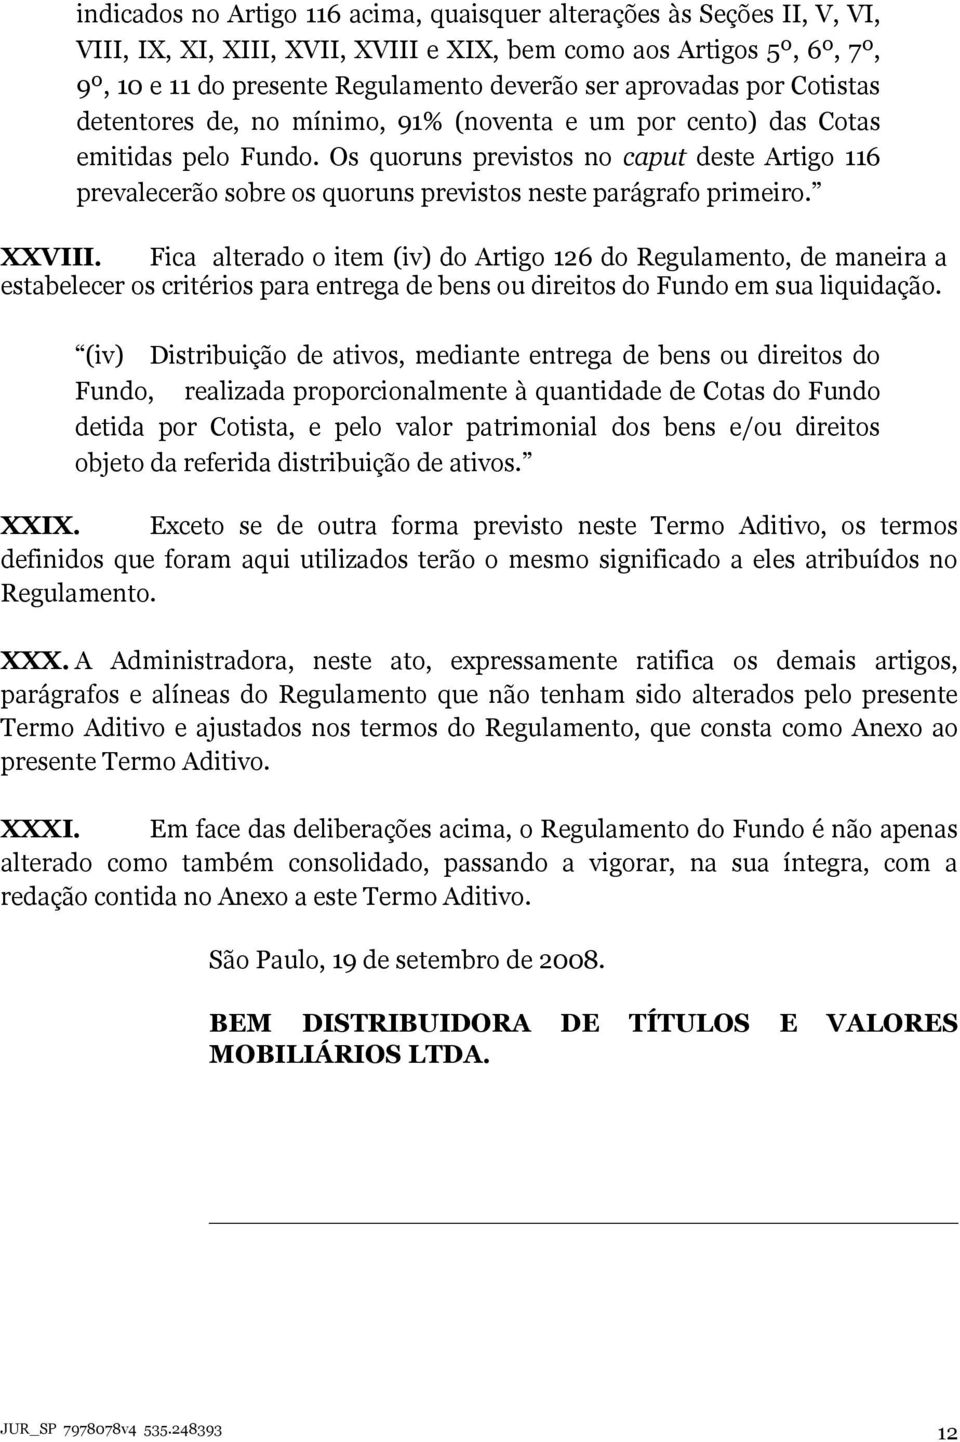 Os quoruns previstos no caput deste Artigo 116 prevalecerão sobre os quoruns previstos neste parágrafo primeiro. XXVIII.